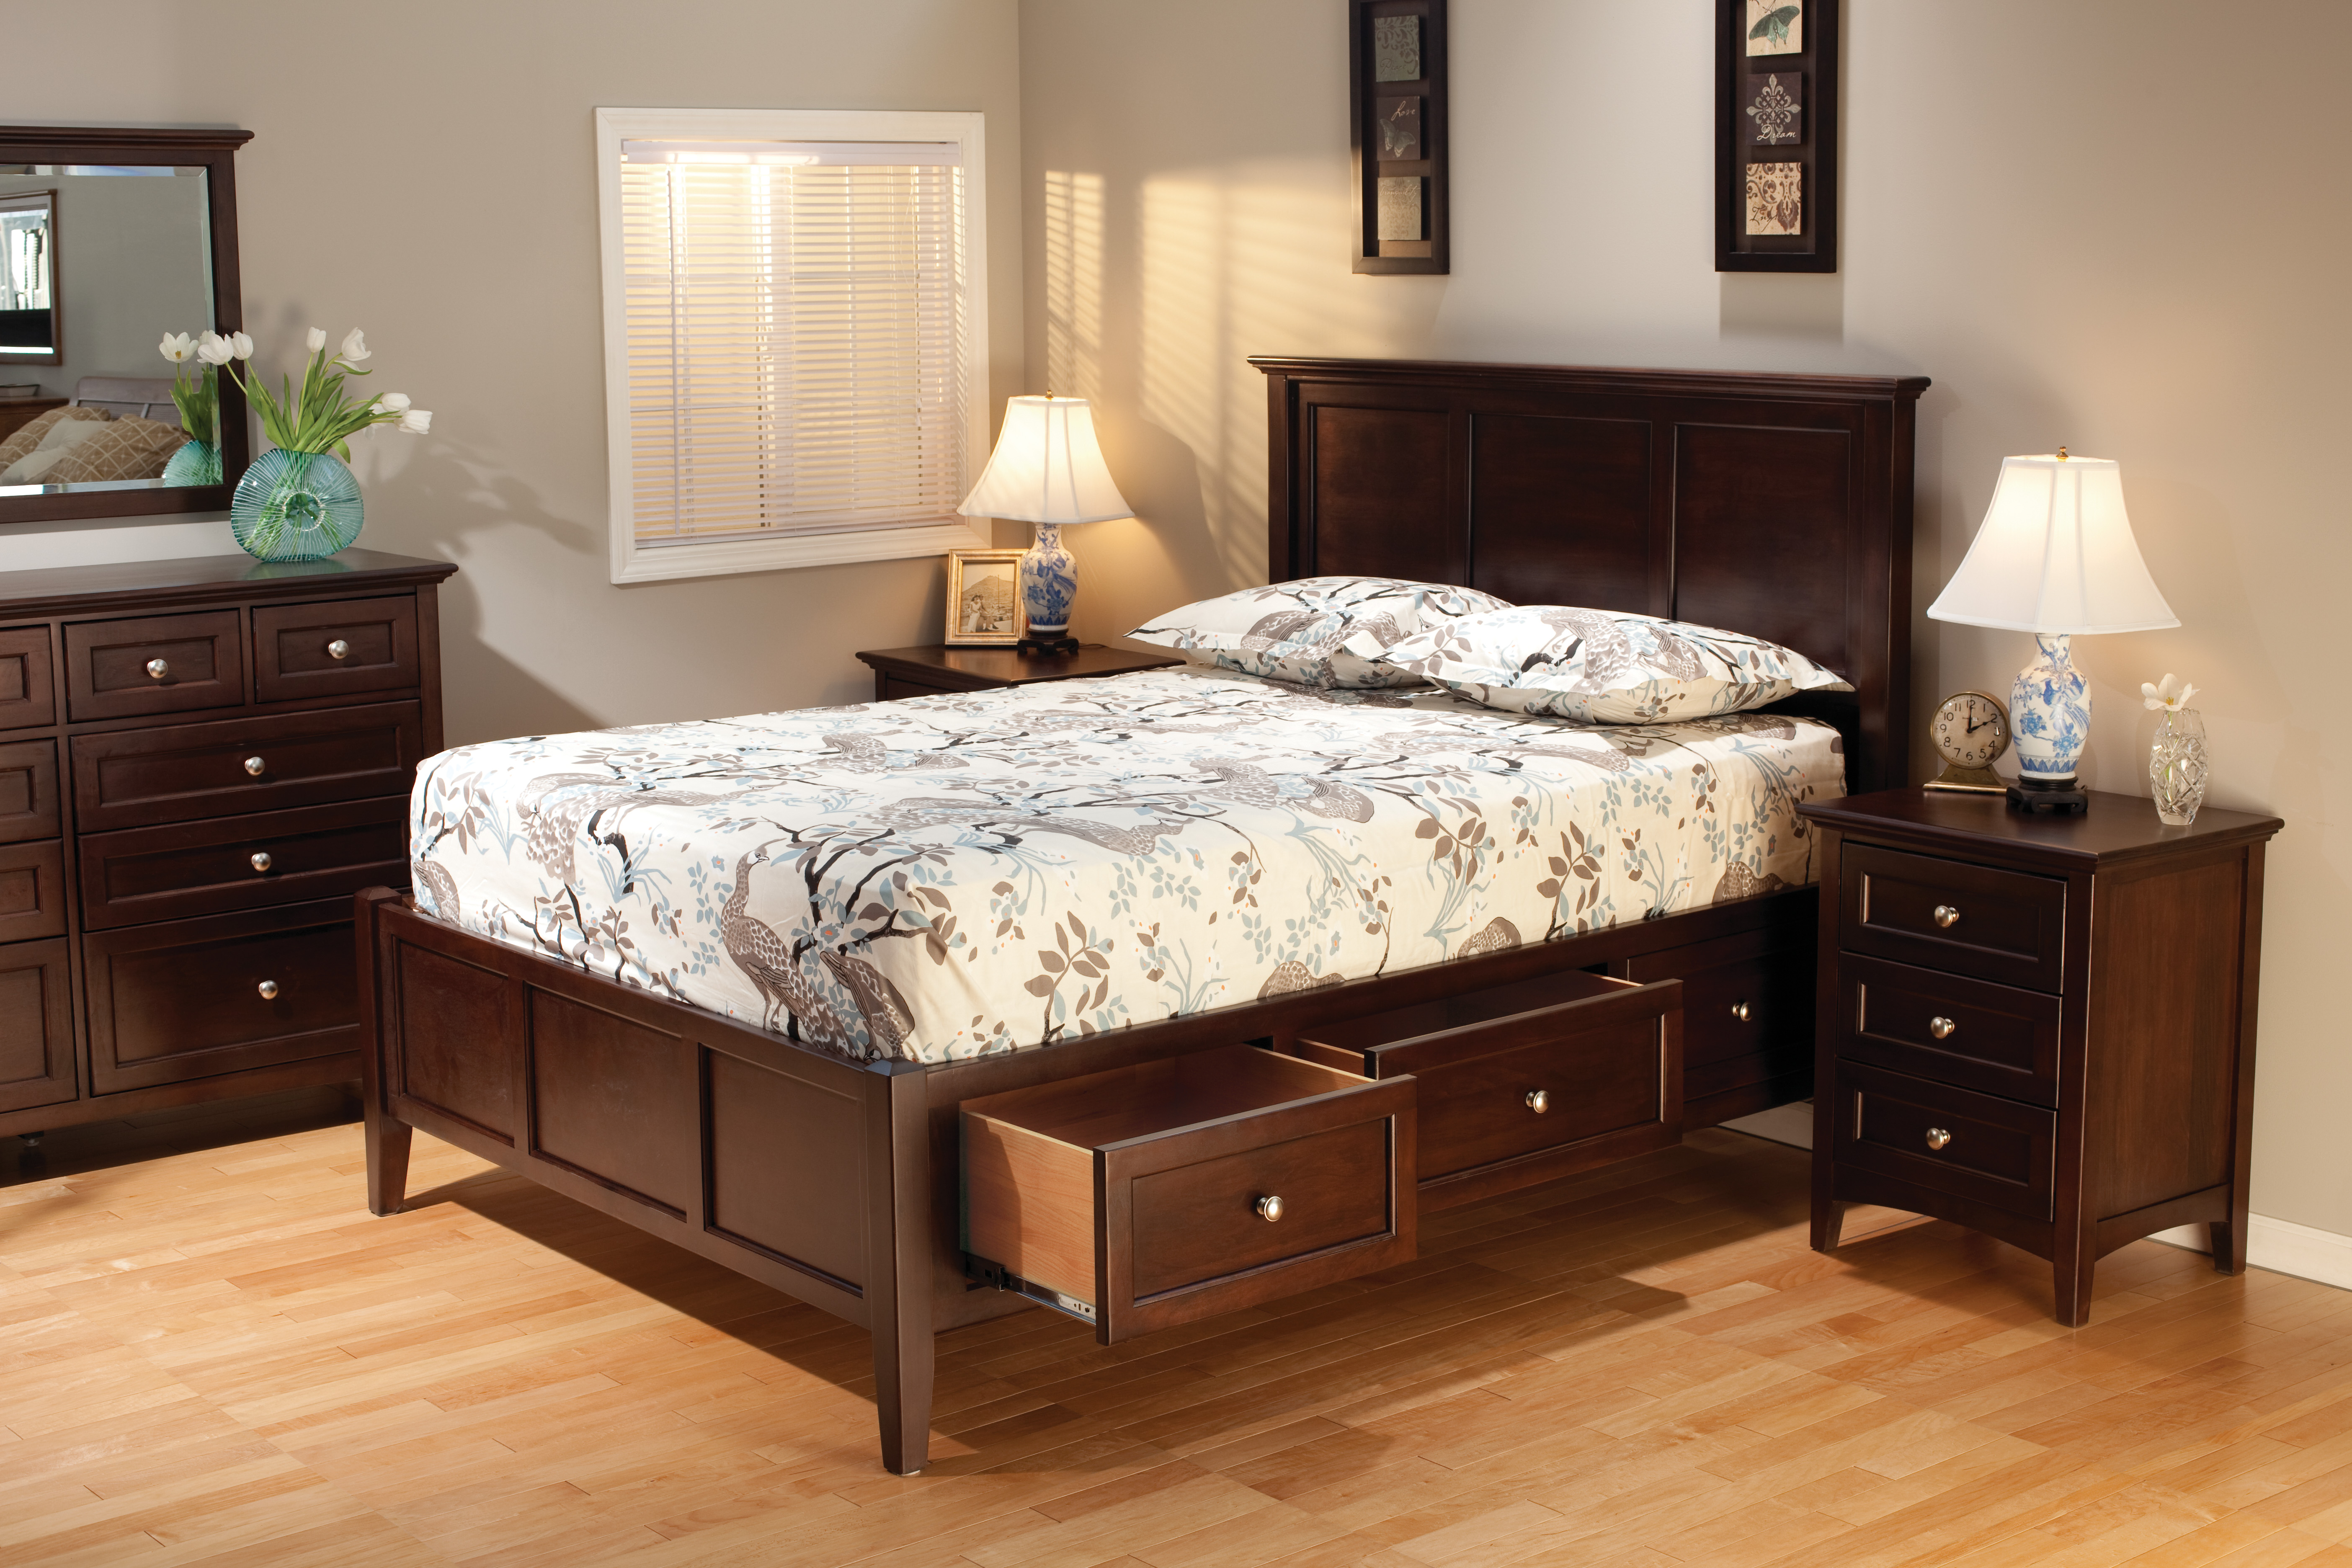 wooden bedroom furniture for sale